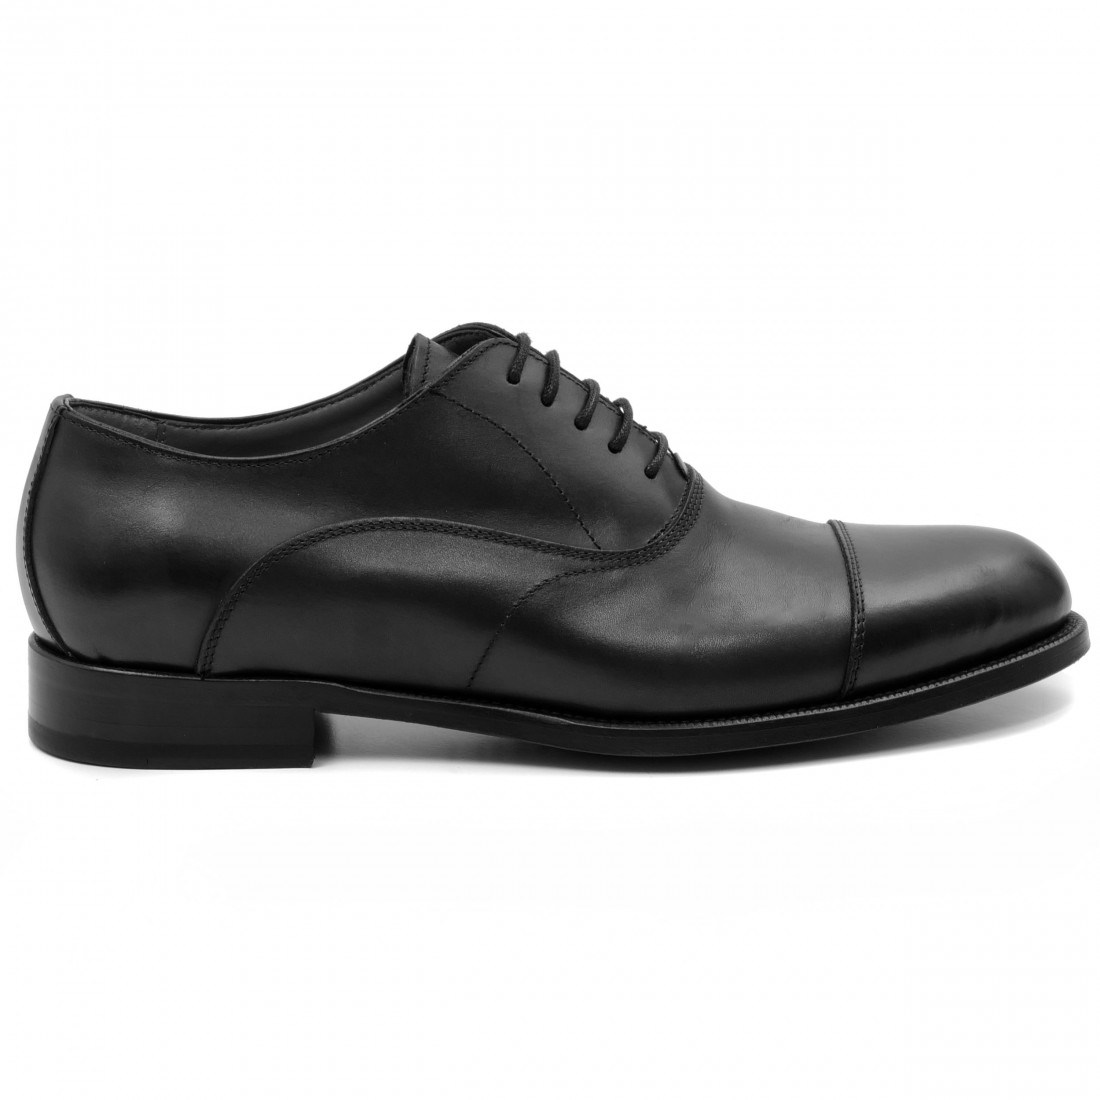 Zapato oxford para hombre Calpierre en piel color negro